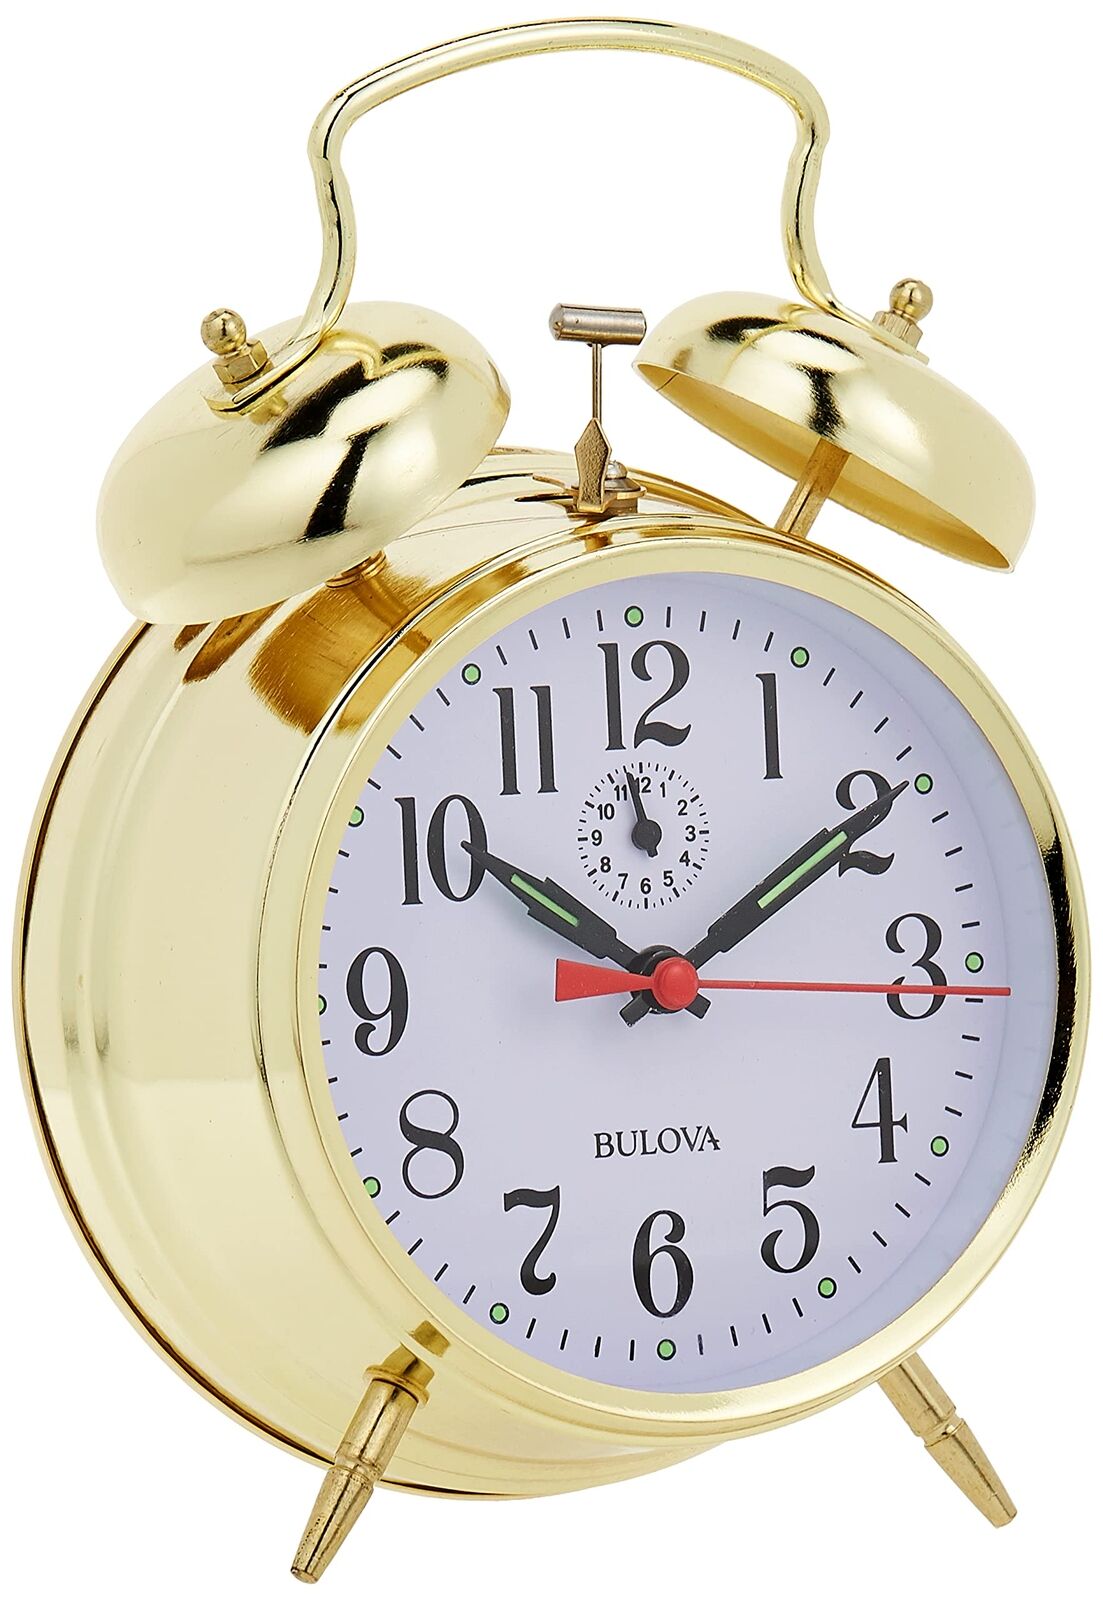 B8124 Bellman Alarm Clock, Gold